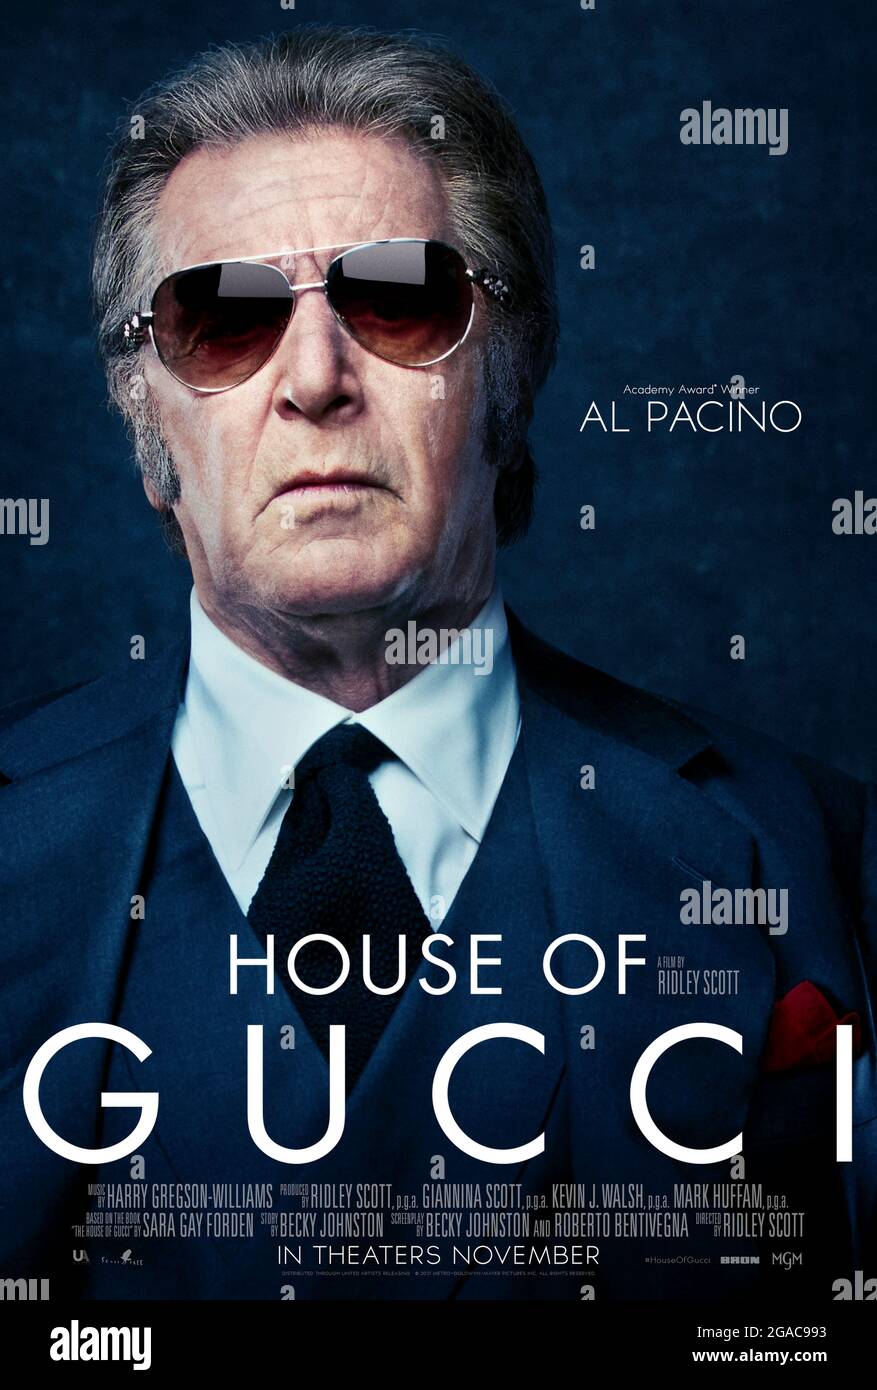 House of Gucci (2021) diretto da Ridley Scott e protagonista al Pacino come Aldo Gucci in un dramma criminale ispirato all'impero di famiglia dietro la famosa casa di moda italiana. Foto Stock